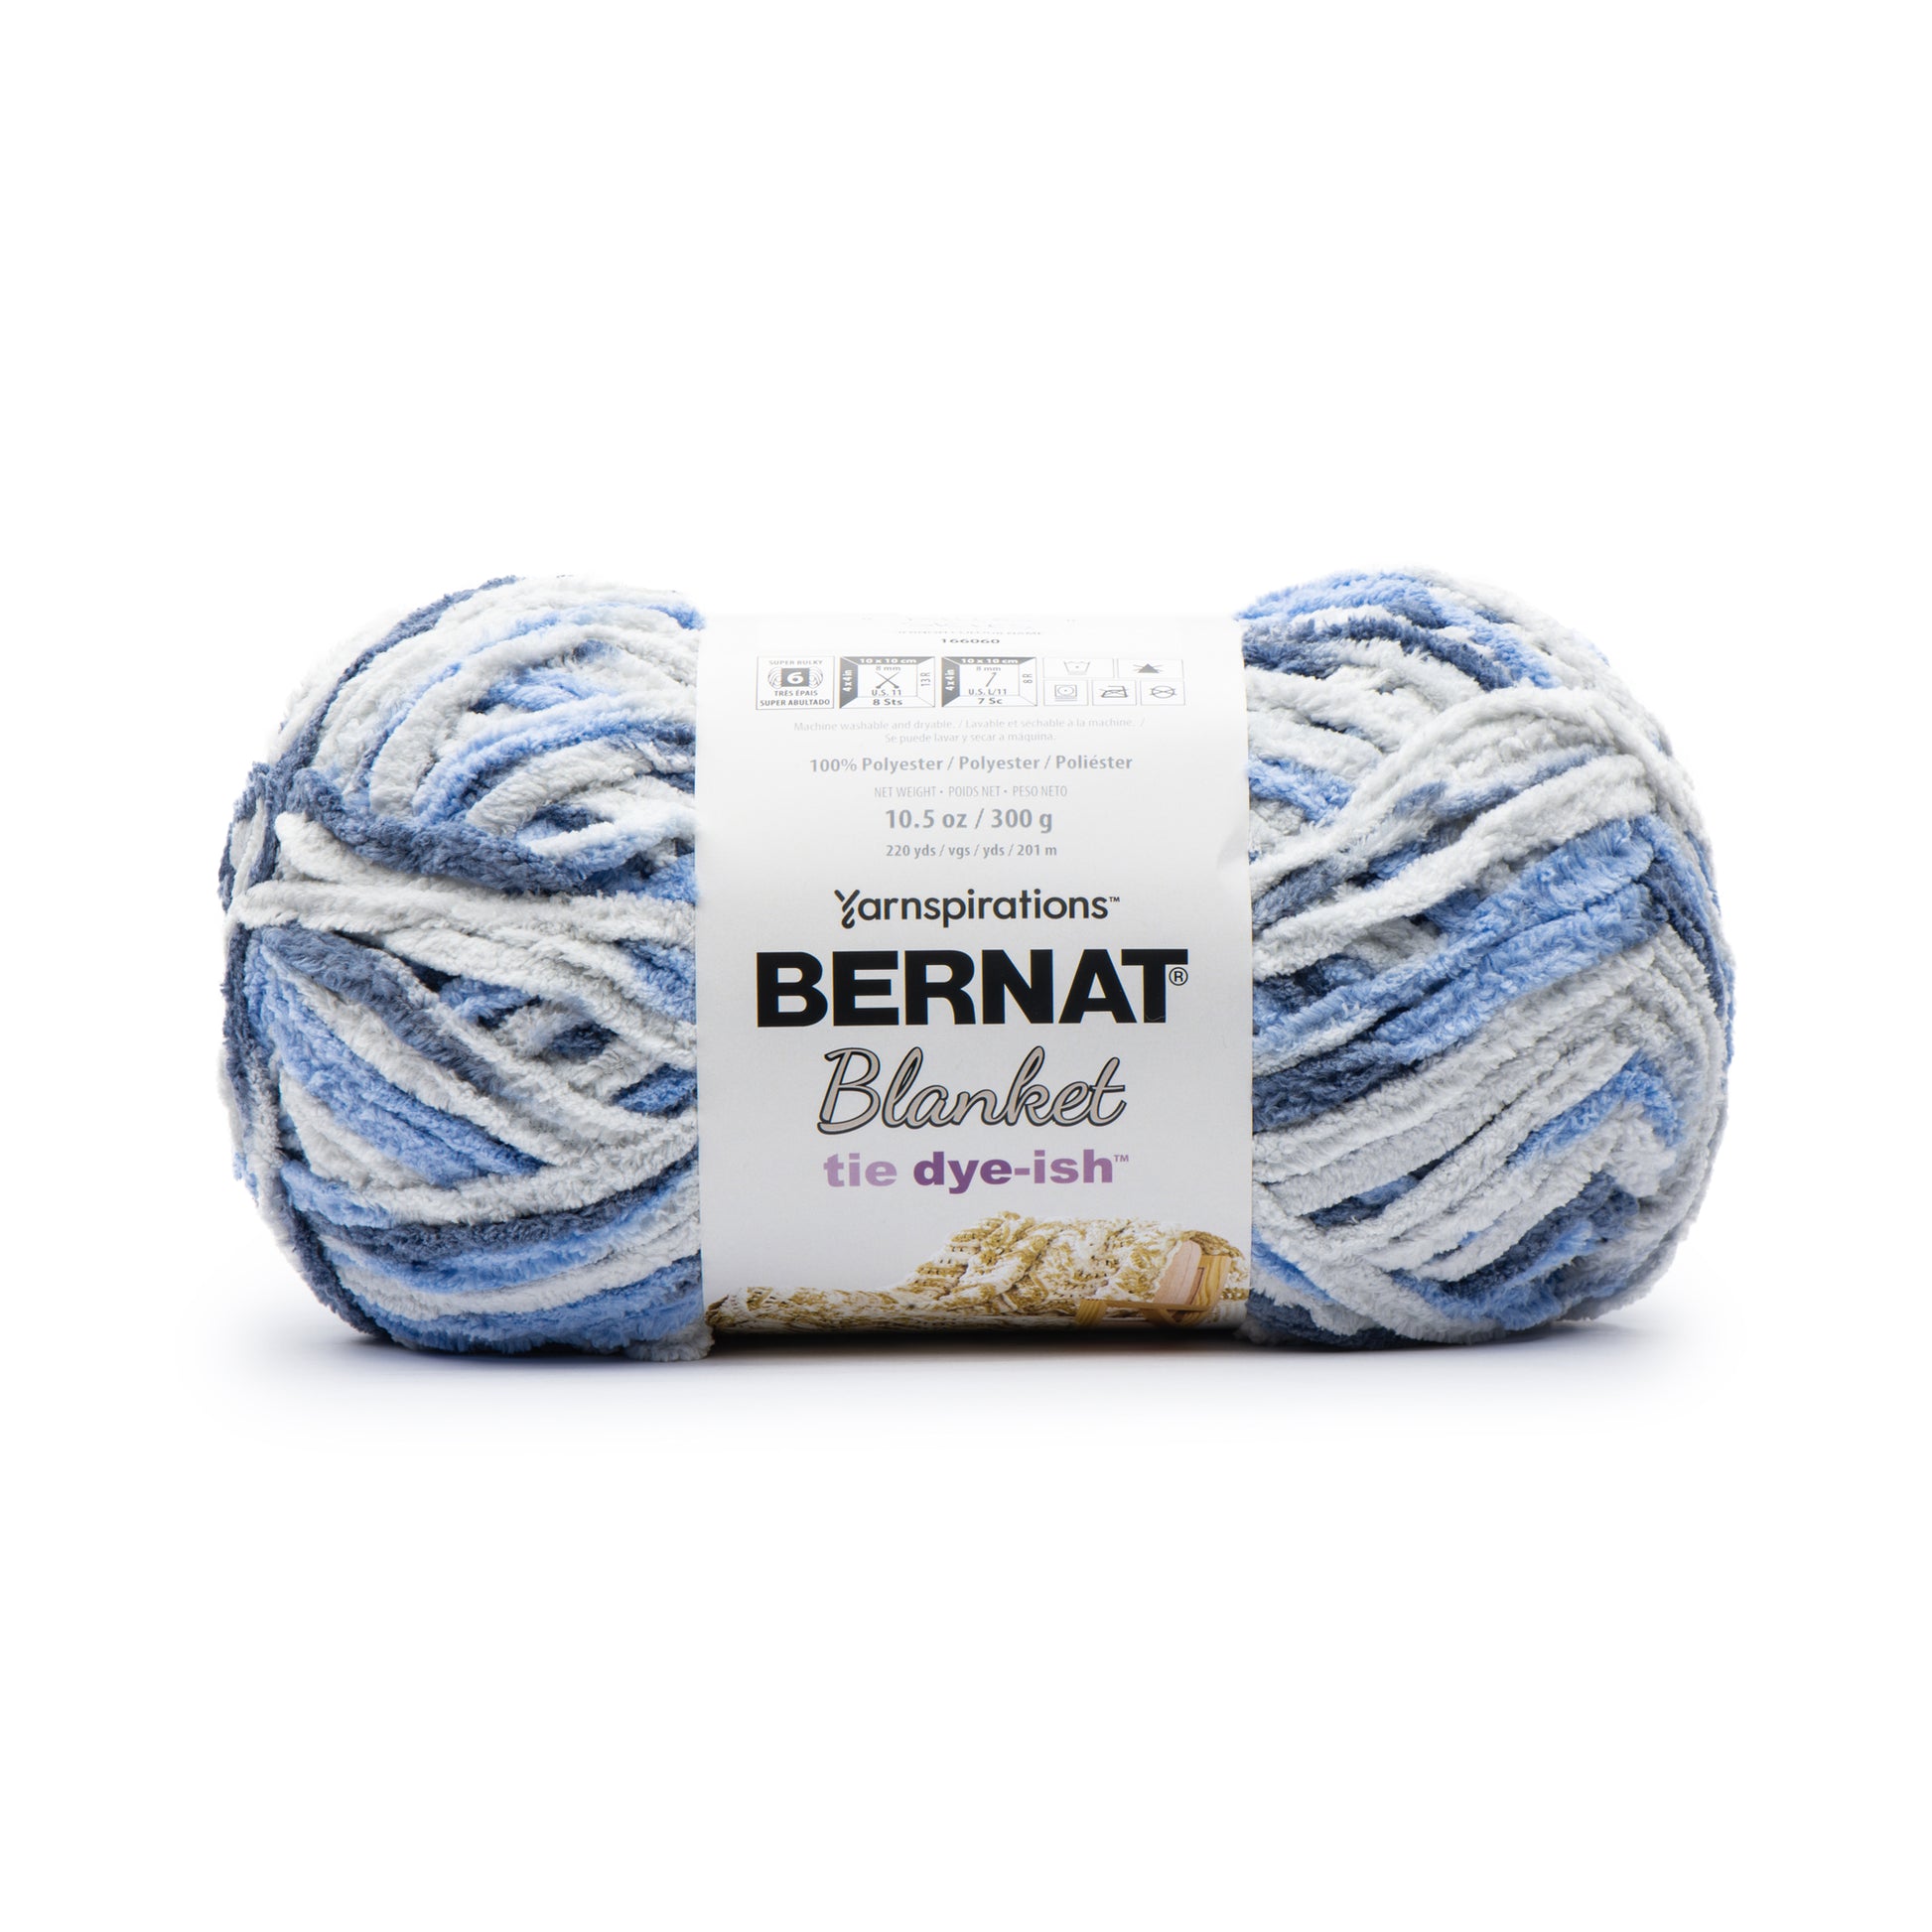 Bernat Blanket Tie Dye-ish Yarn (300g/10.5oz) Blue Skies